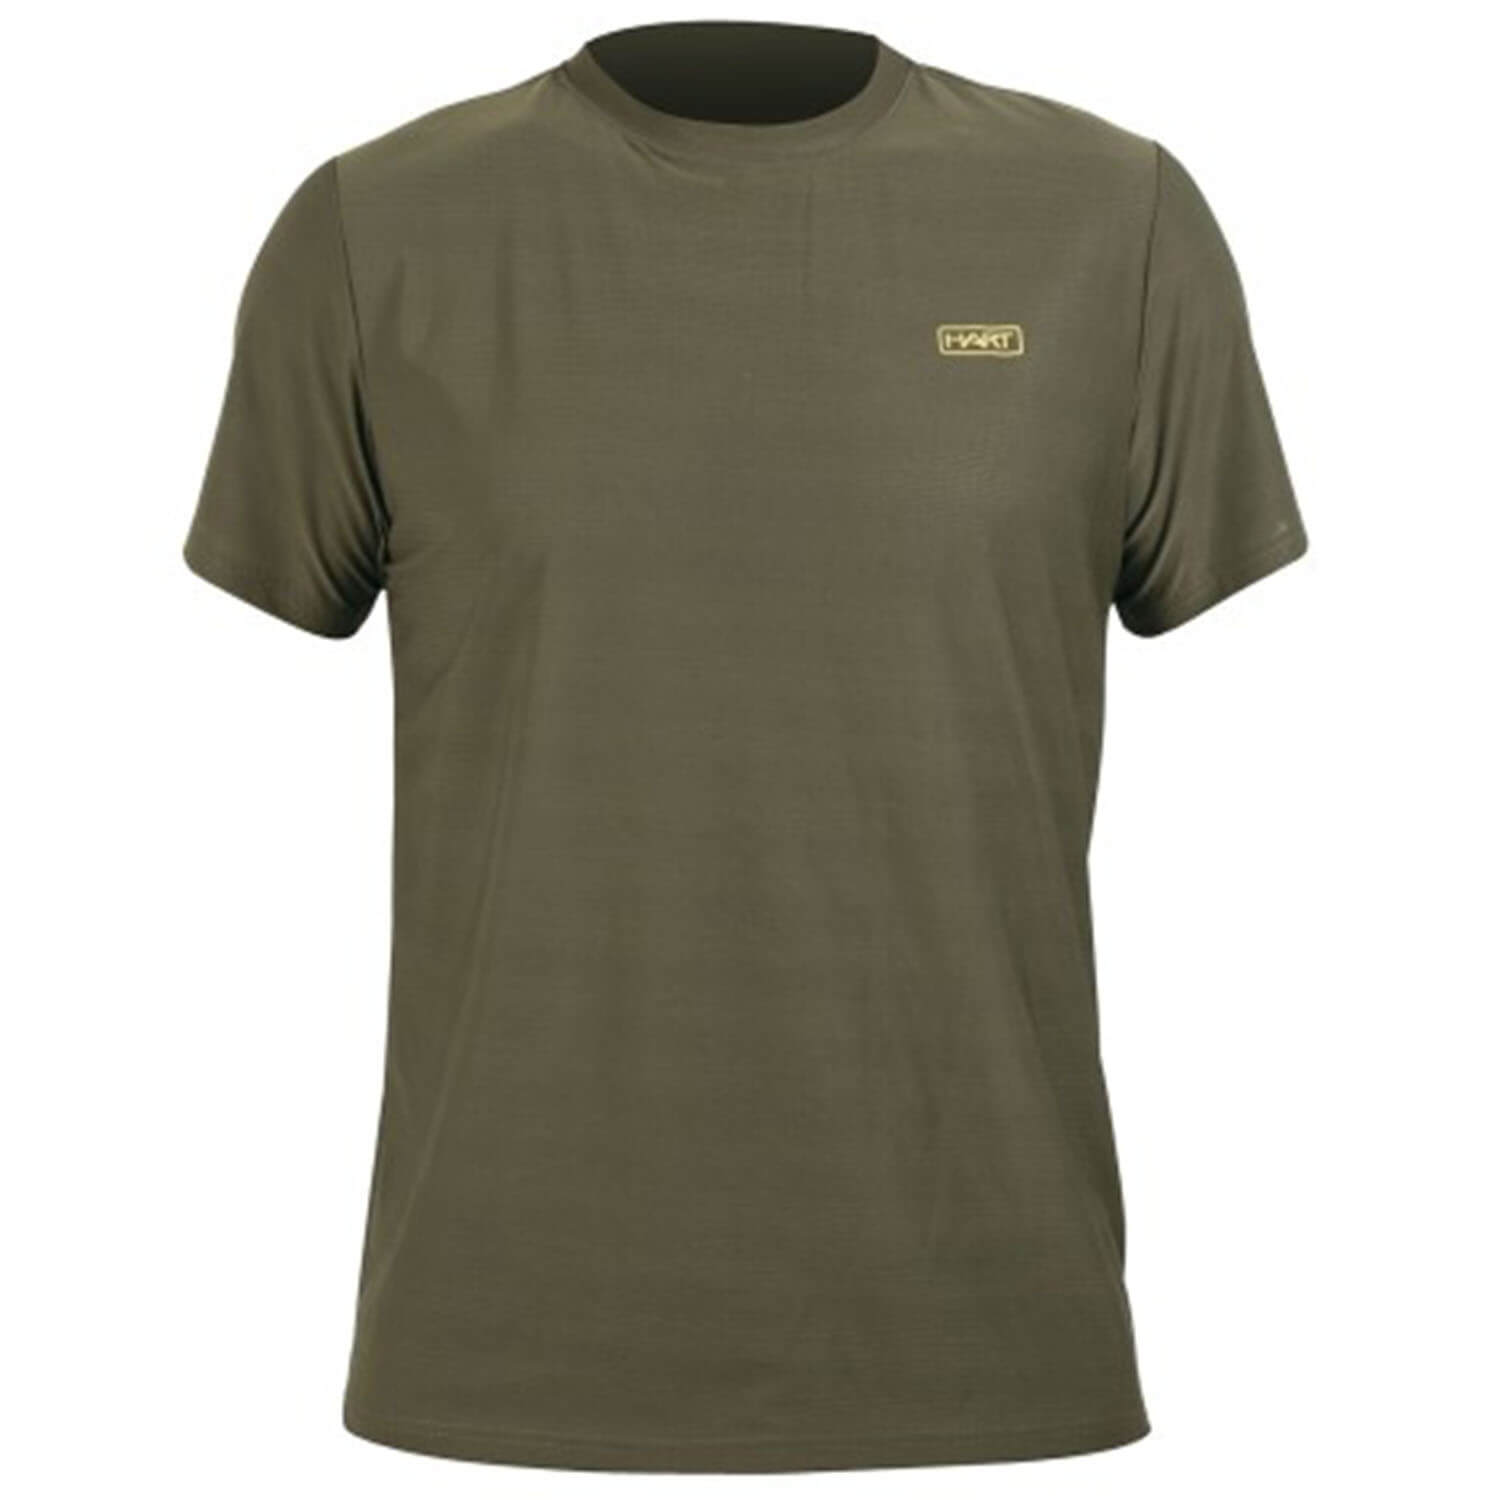  Hart Ural-TS T-shirt (groen)